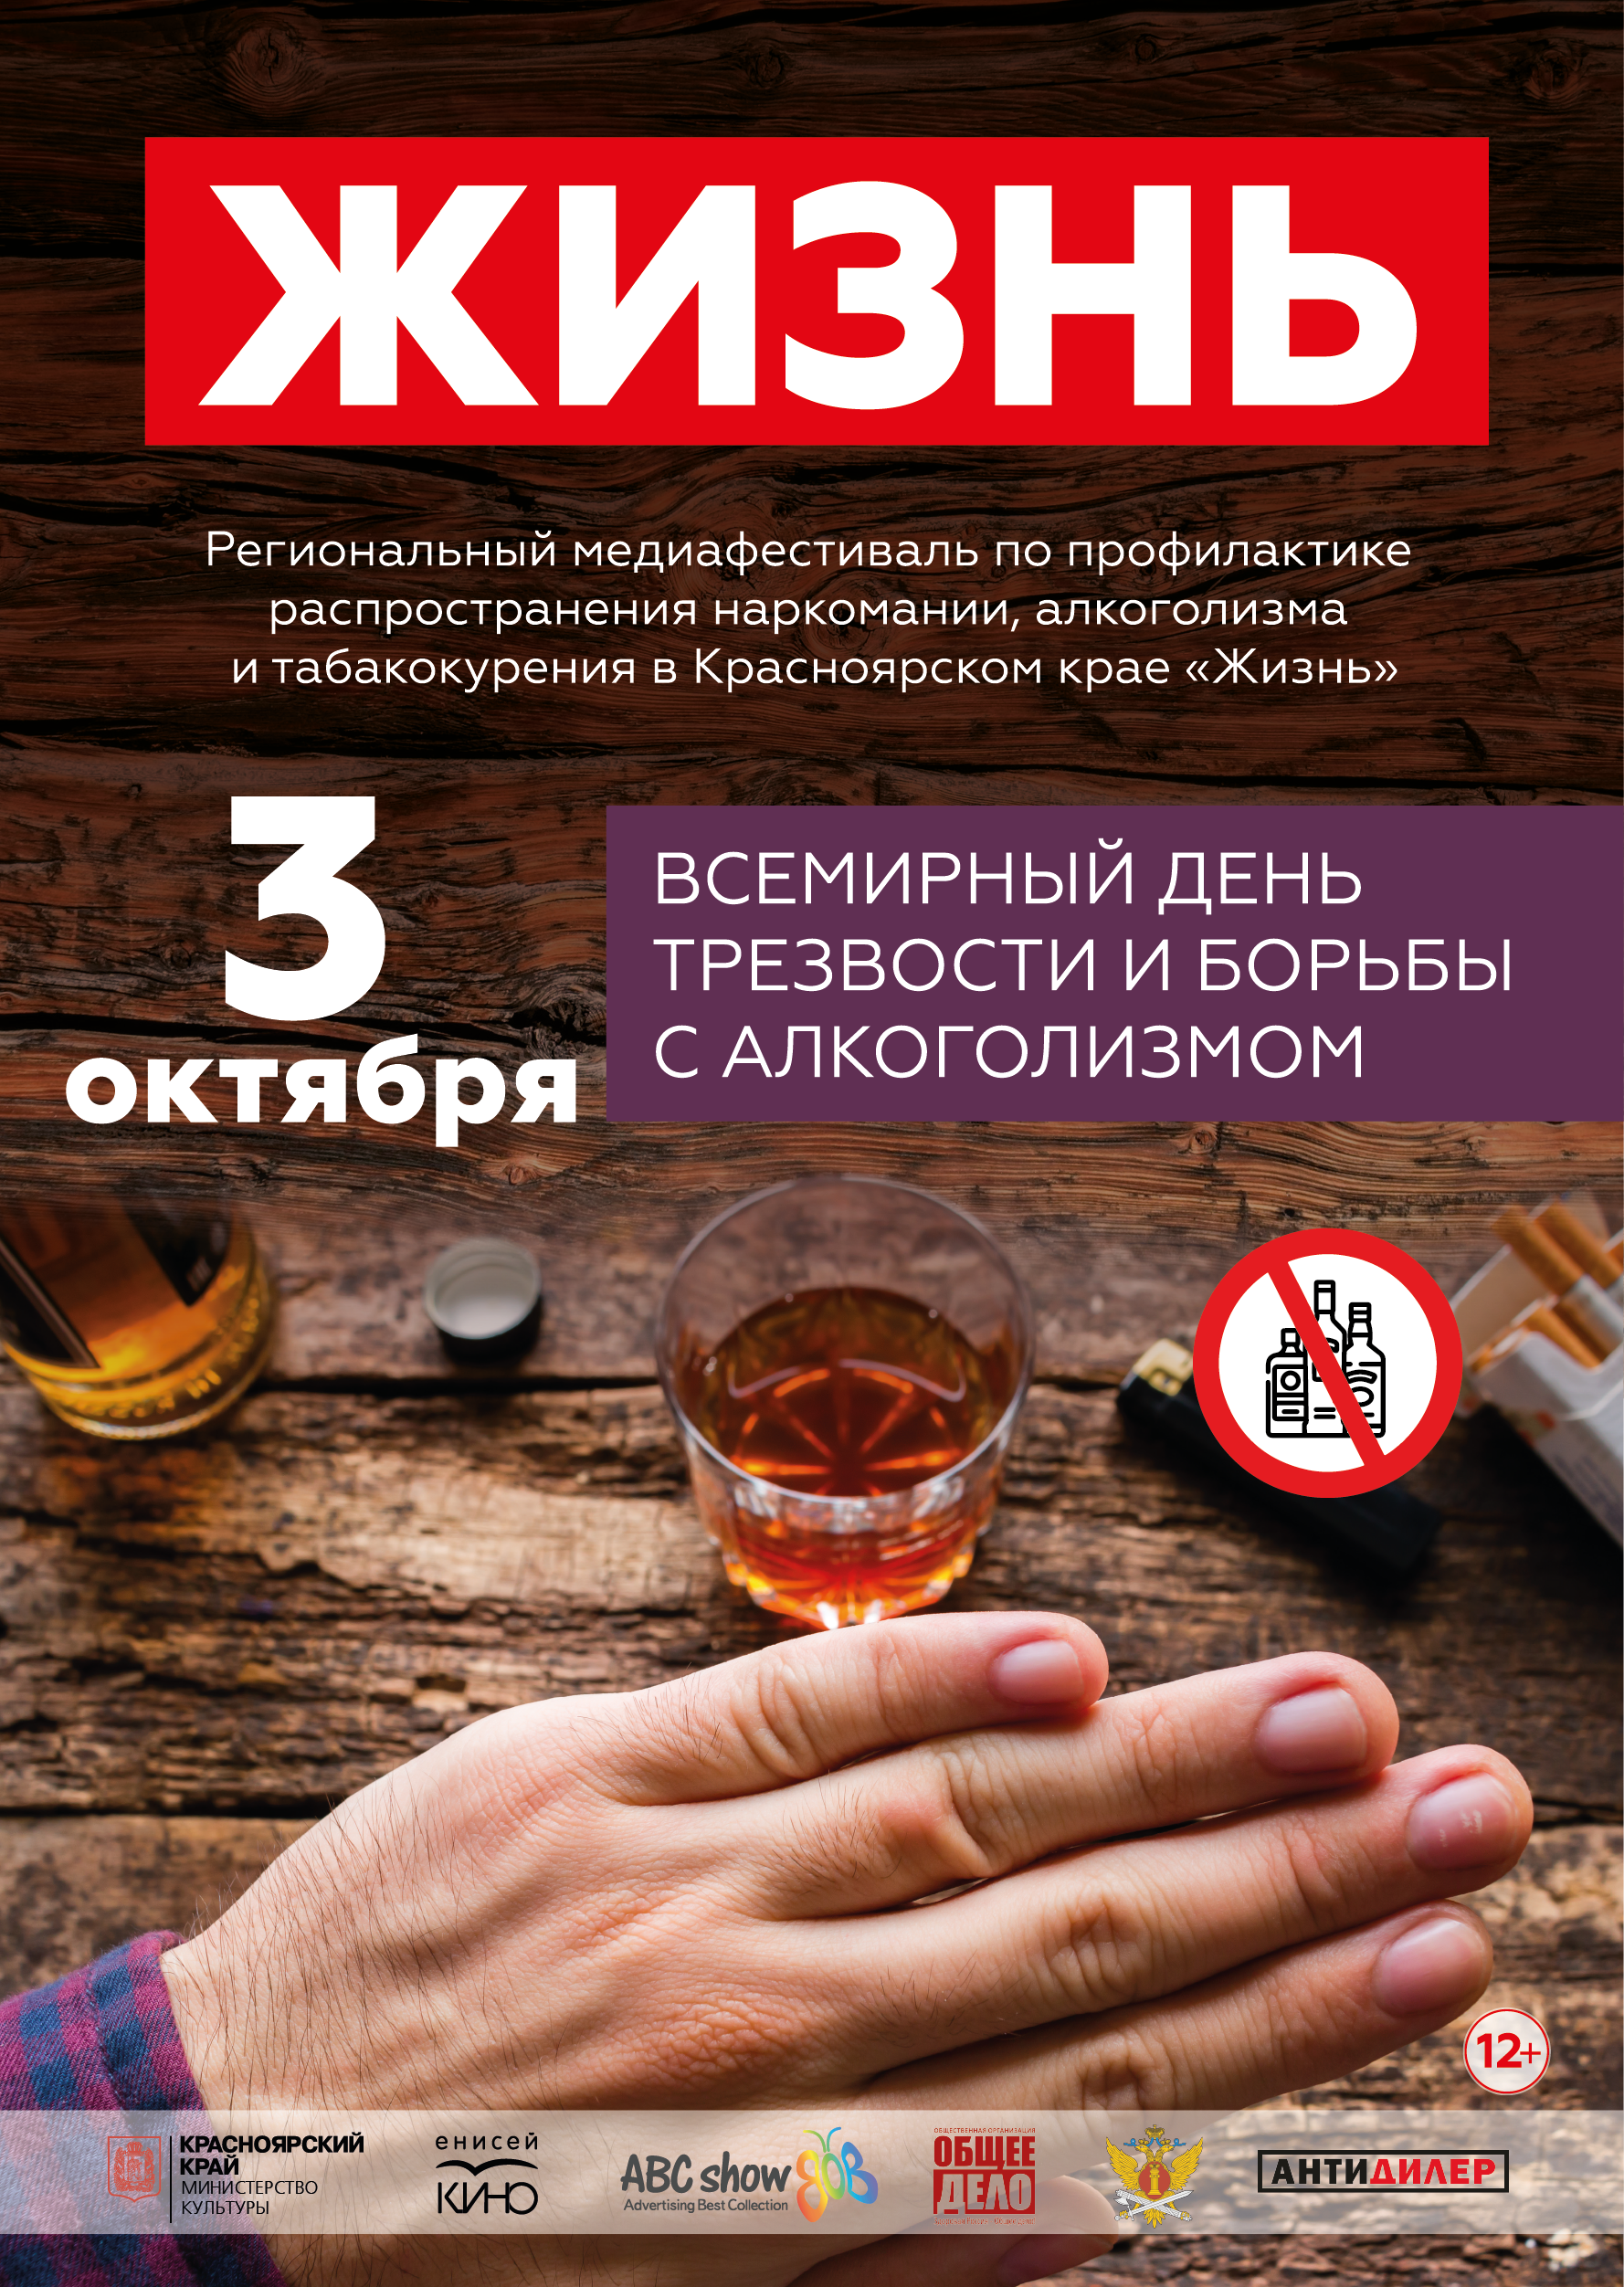 Третий этап медиафестиваля «Жизнь» пройдет в Красноярском крае во  Всемирный день трезвости и борьбы с алкоголизмом